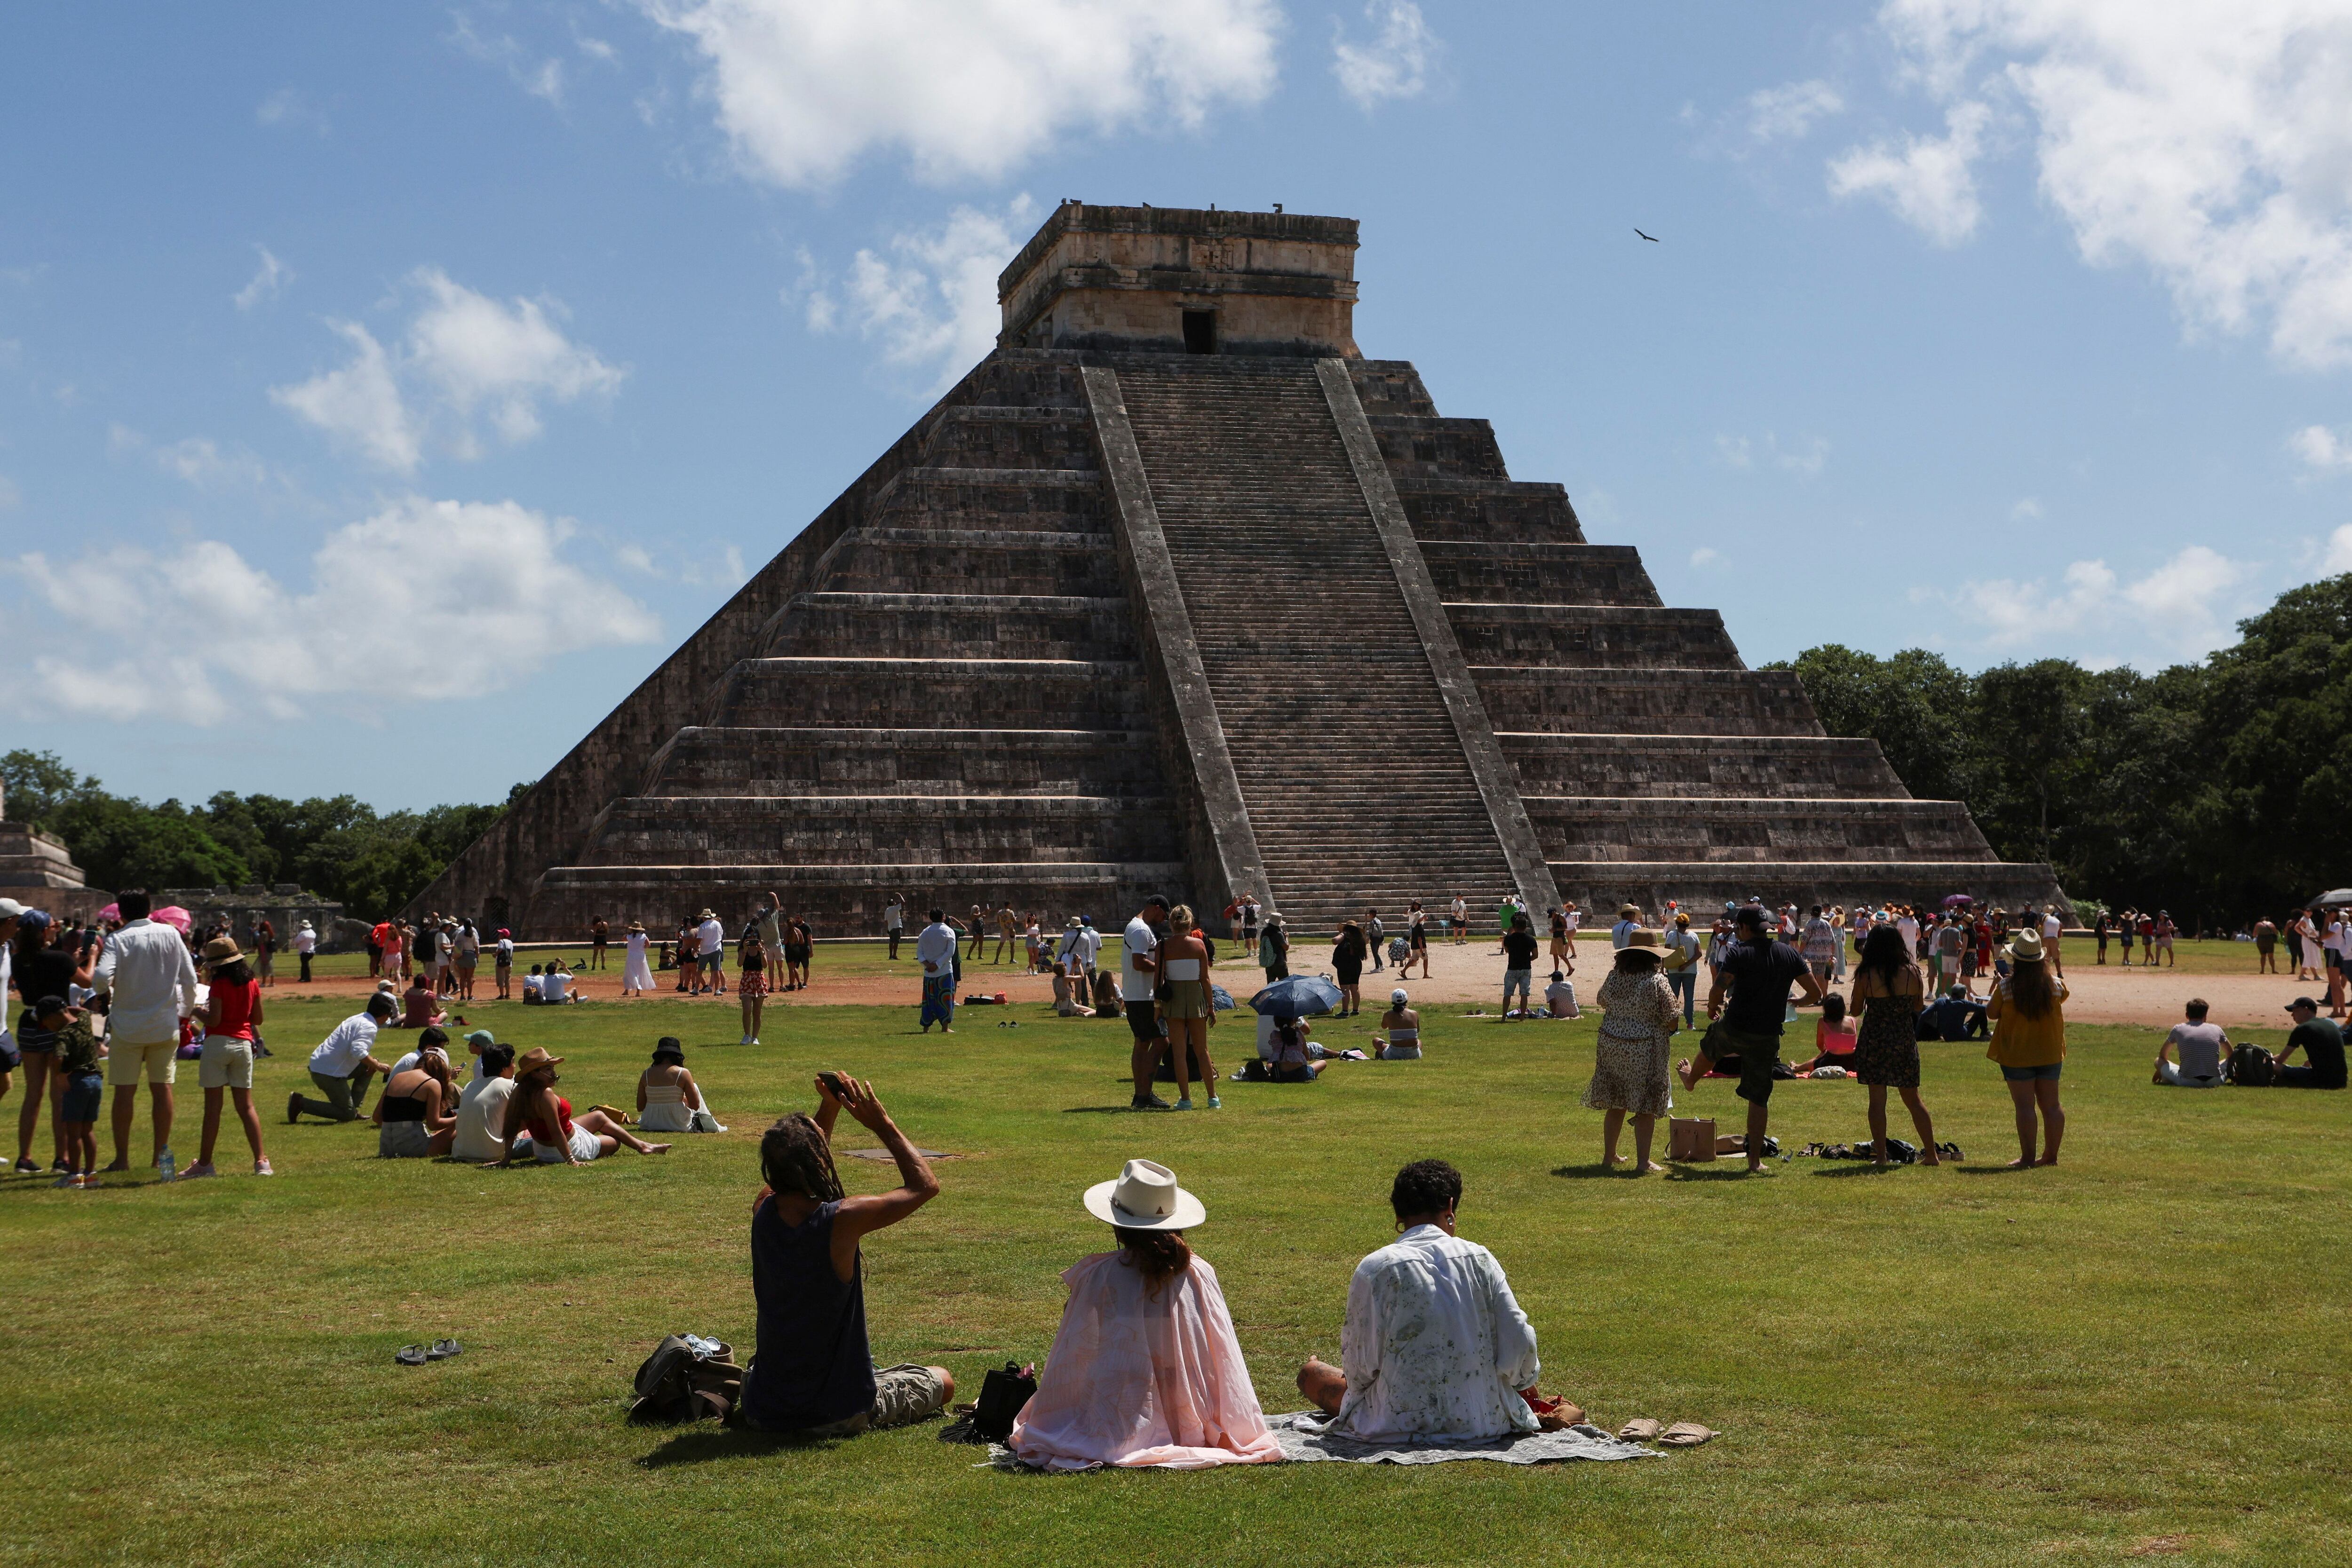 La ciudad maya de Chichén Itzá fue declarada en 1988 como Patrimonio de la Humanidad por la UNESCO. REUTERS/Lorenzo Hernandez